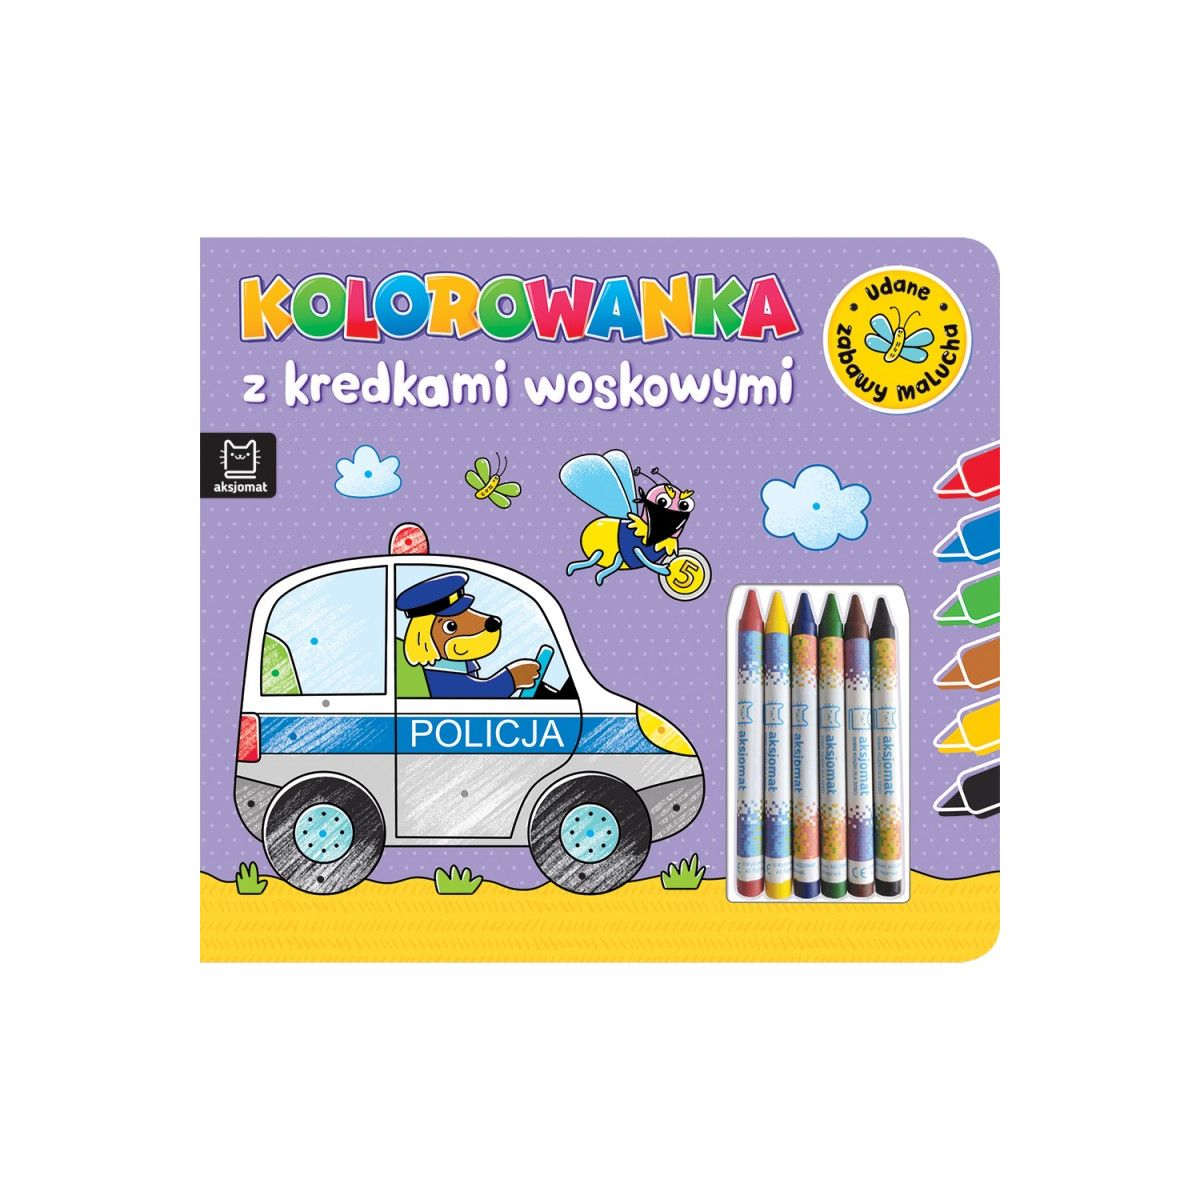 Książeczka edukacyjna Kolorowanka z kredkami woskowymi. Udane zabawy malucha Aksjomat